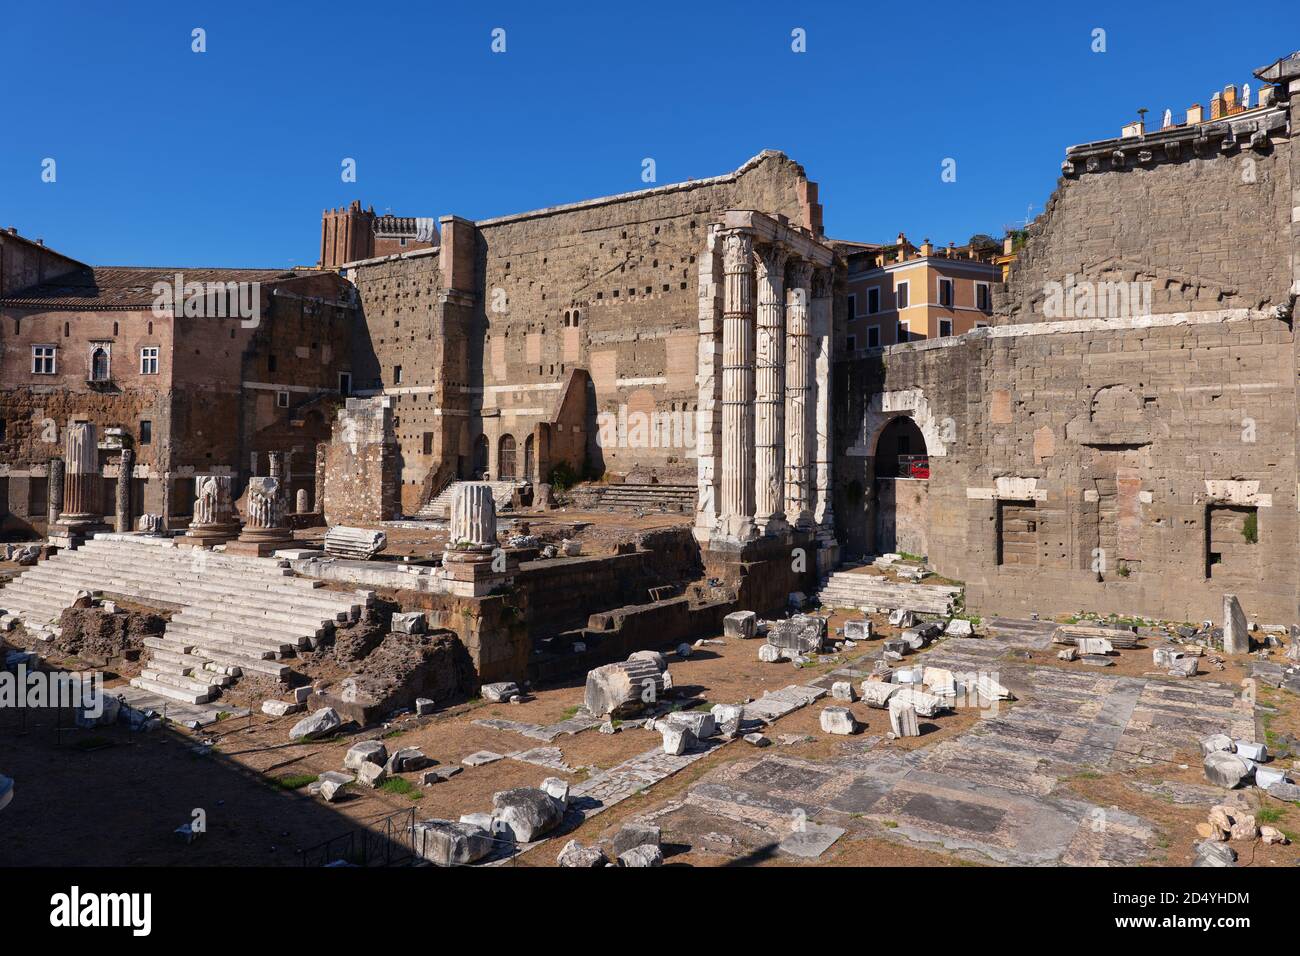 Alte Stadt von Rom in Italien, Forum von Augustus Ruinen mit Tempel von Mars Ultor (der Rächer). Stockfoto